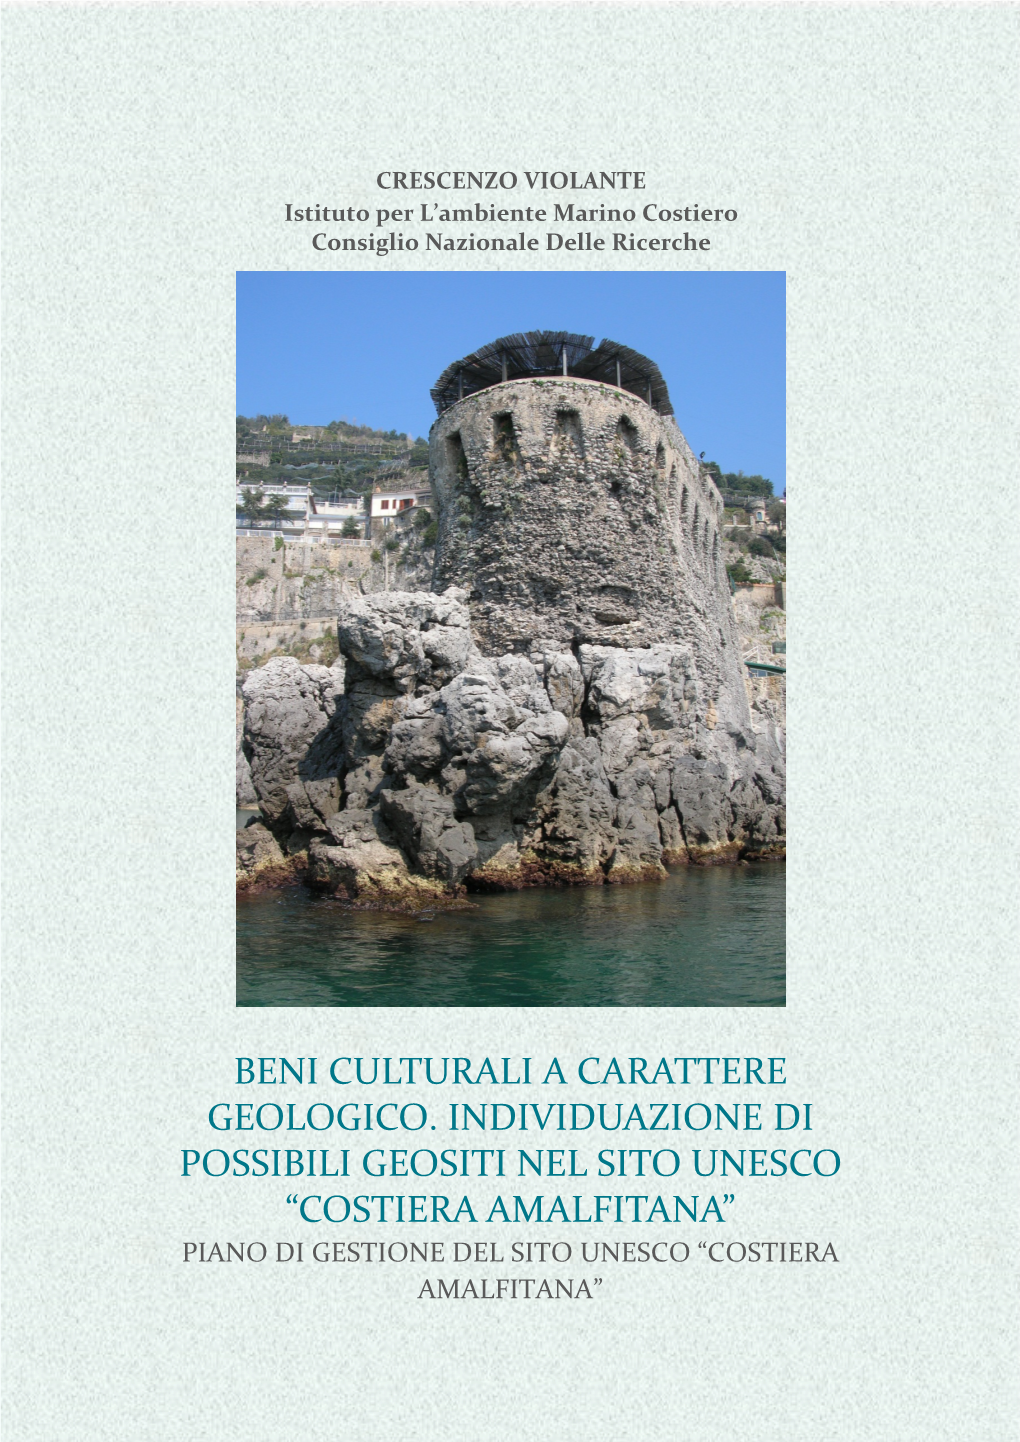 Beni Culturali a Carattere Geologico. Individuazione Di Possibili Geositi Nel Sito Unesco “Costiera Amalfitana”